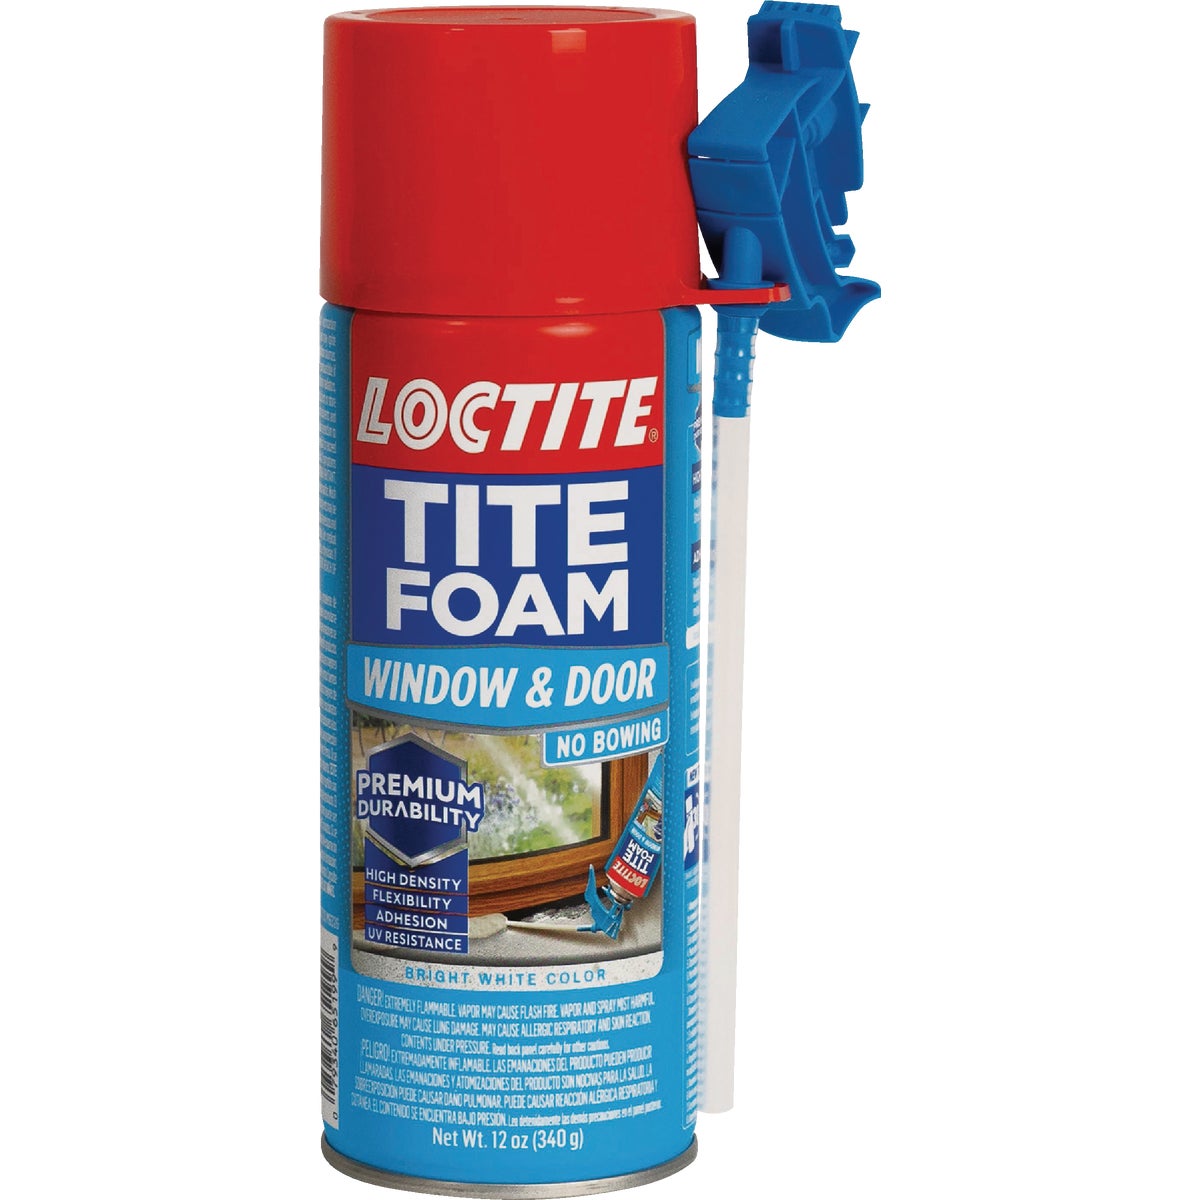 Loctite Tite Foam 12 Oz. Window & Door Foam Sealant